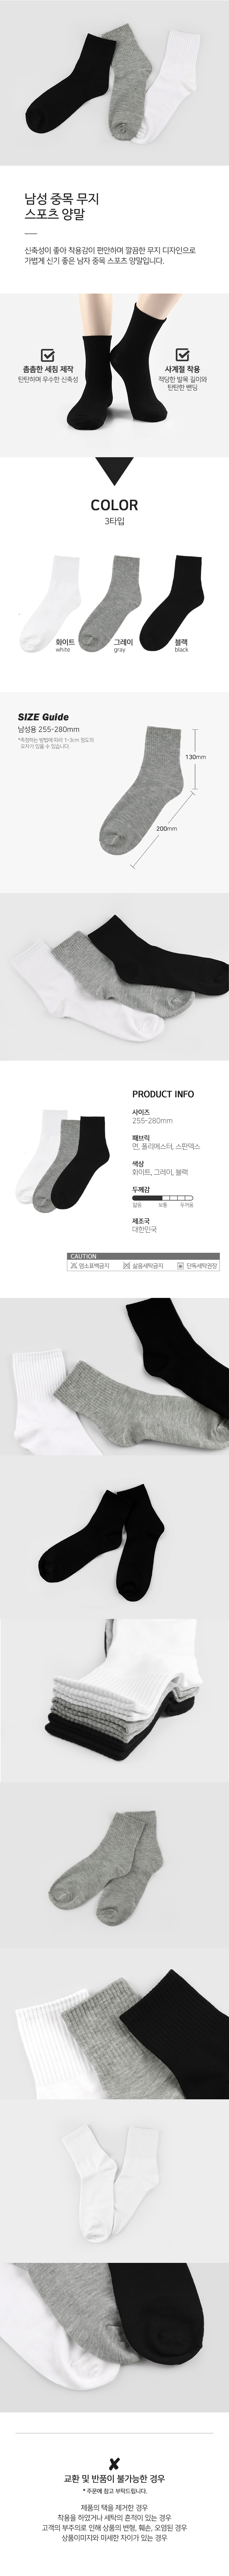 socks_00101.jpg